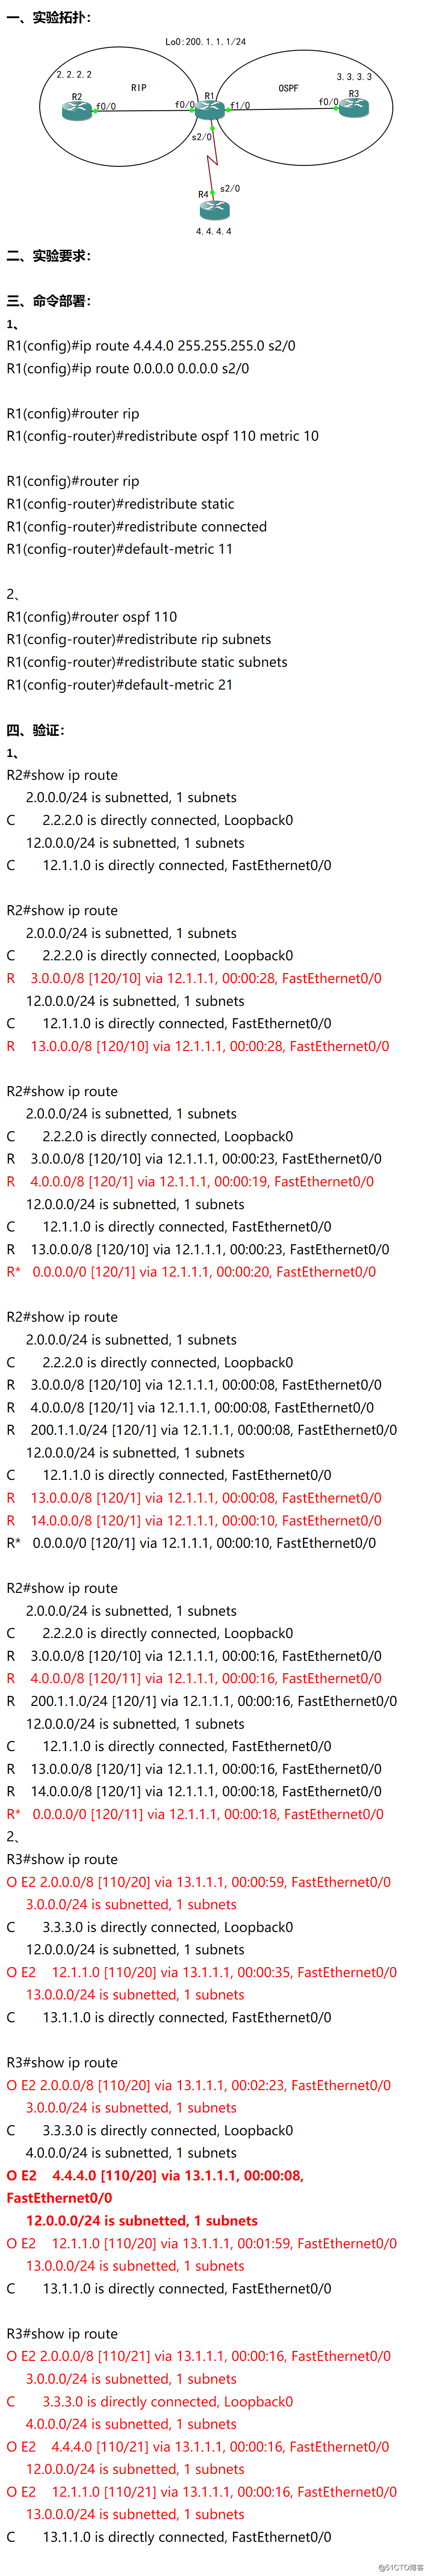 52-高级路由：重分发特性：RIP、OSPF